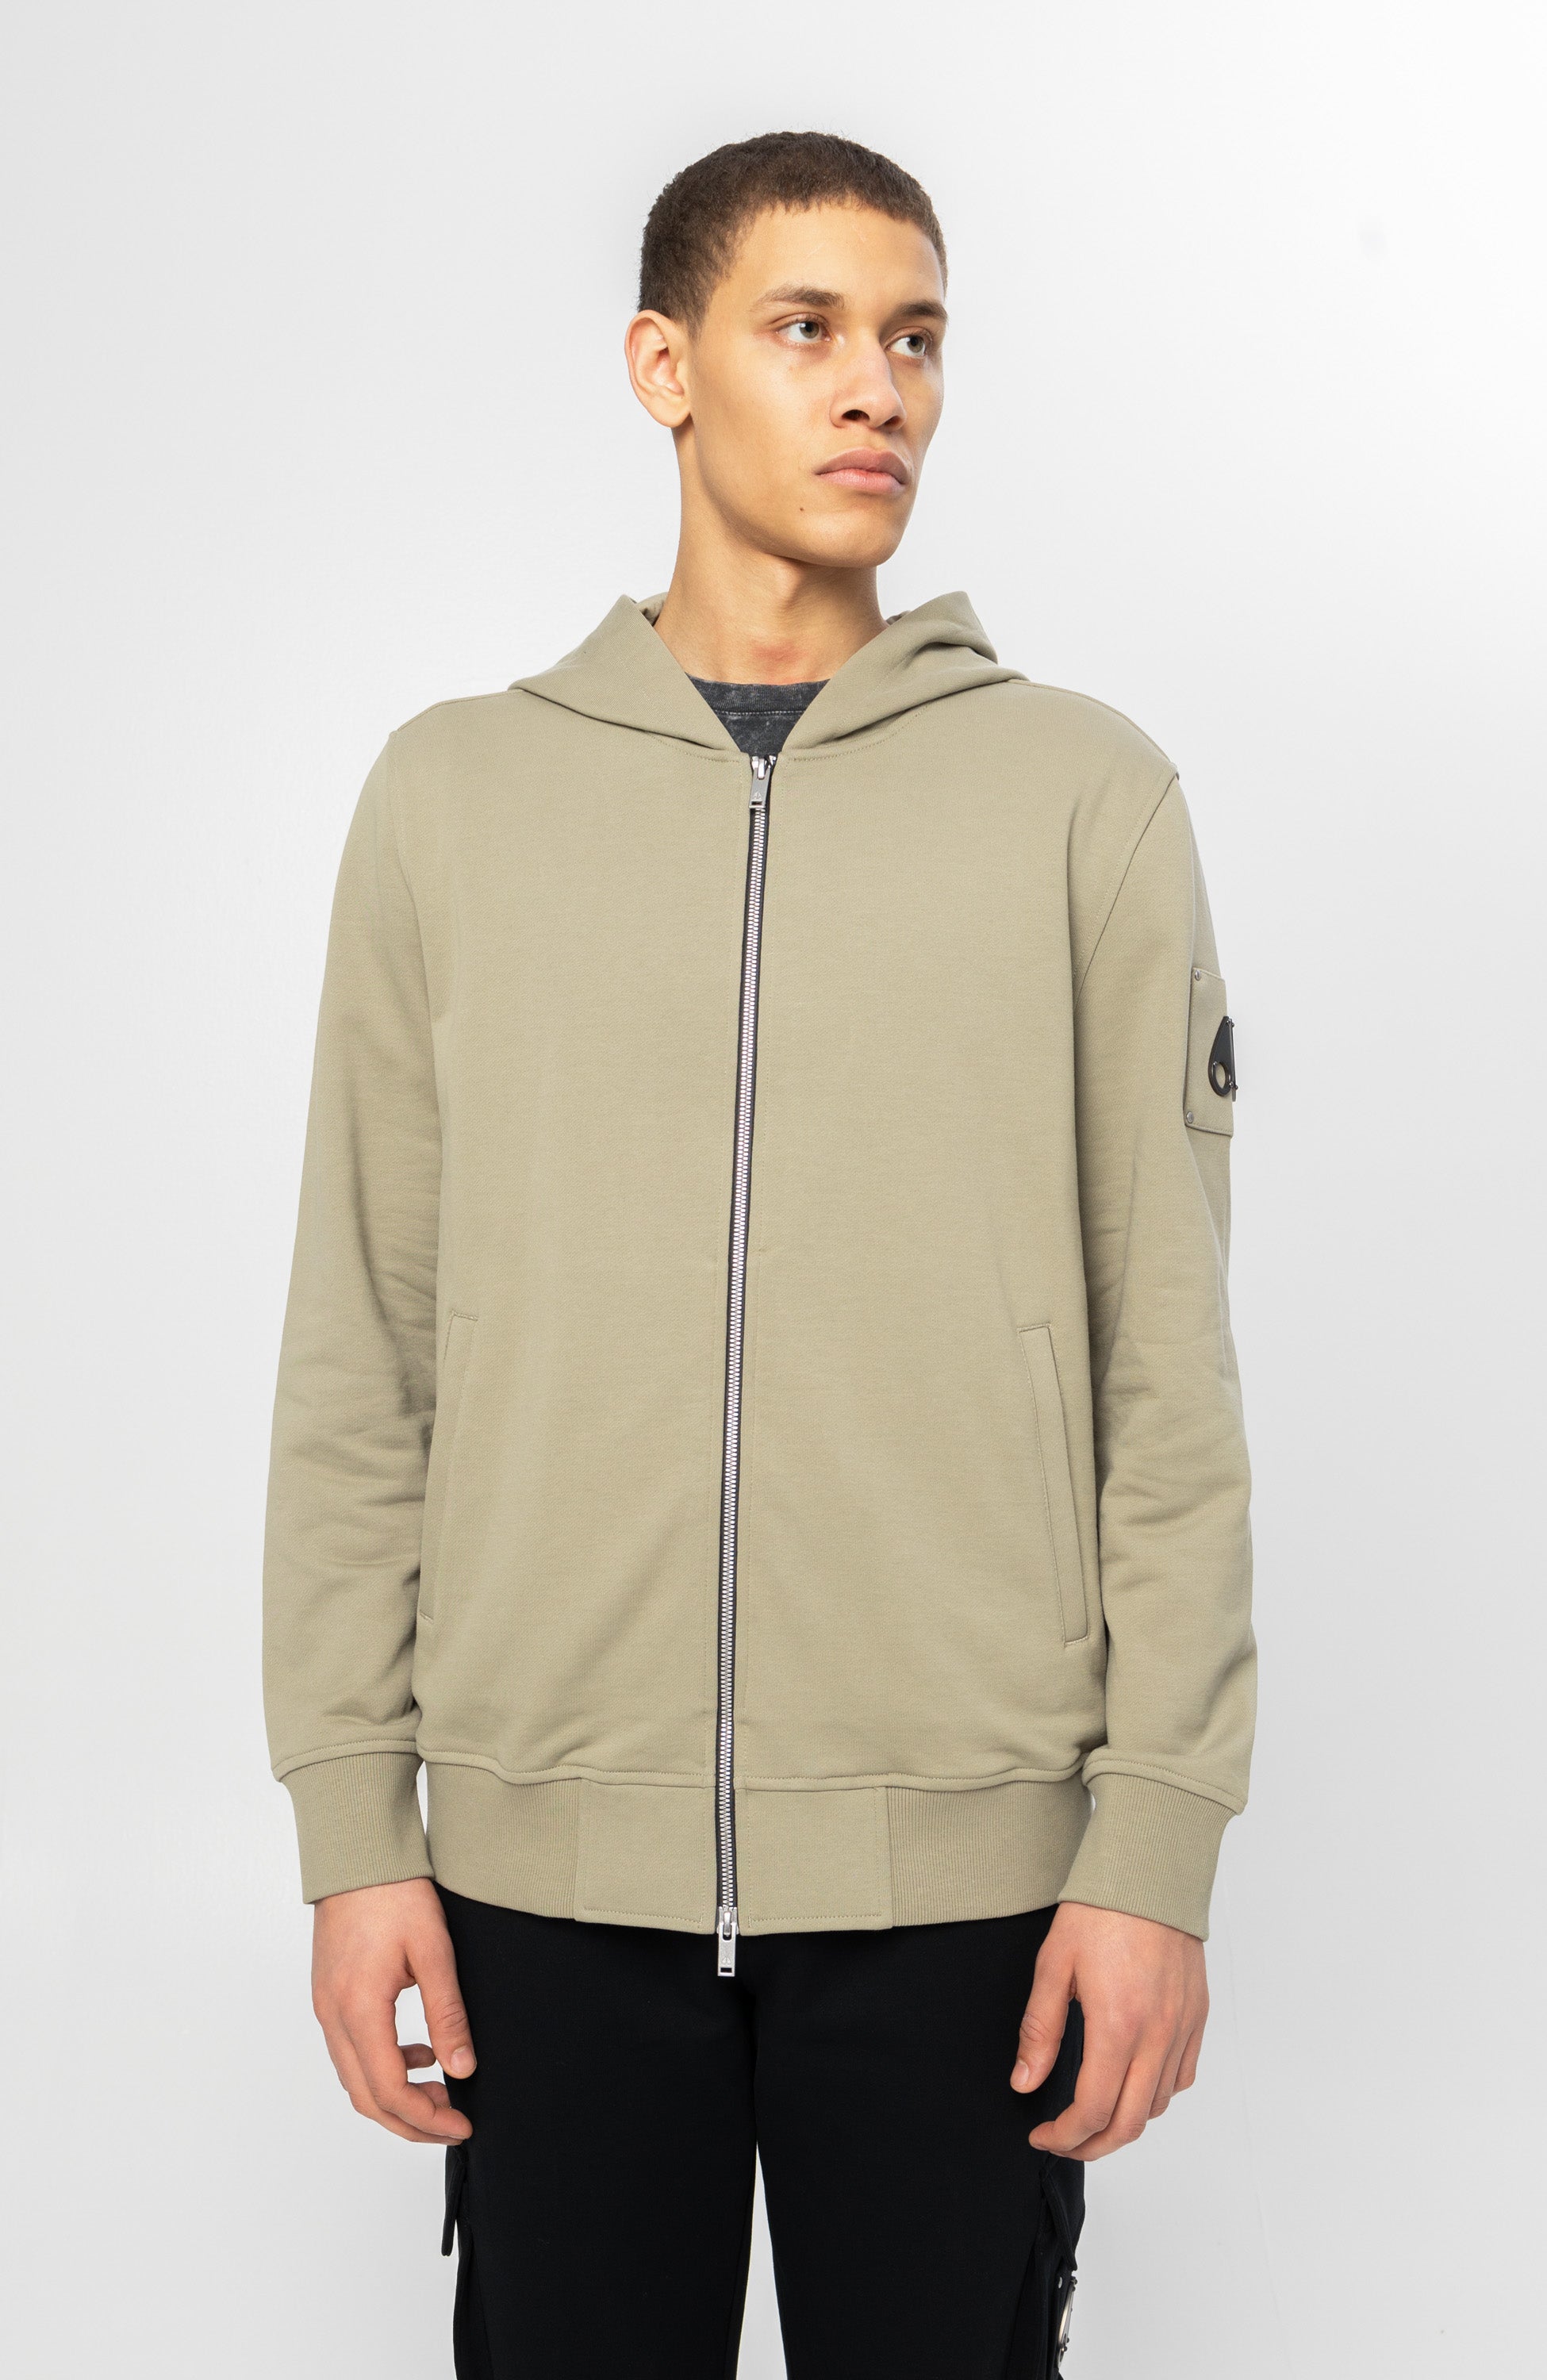 Hooded zip-up sweatshirt HARTSFIELD